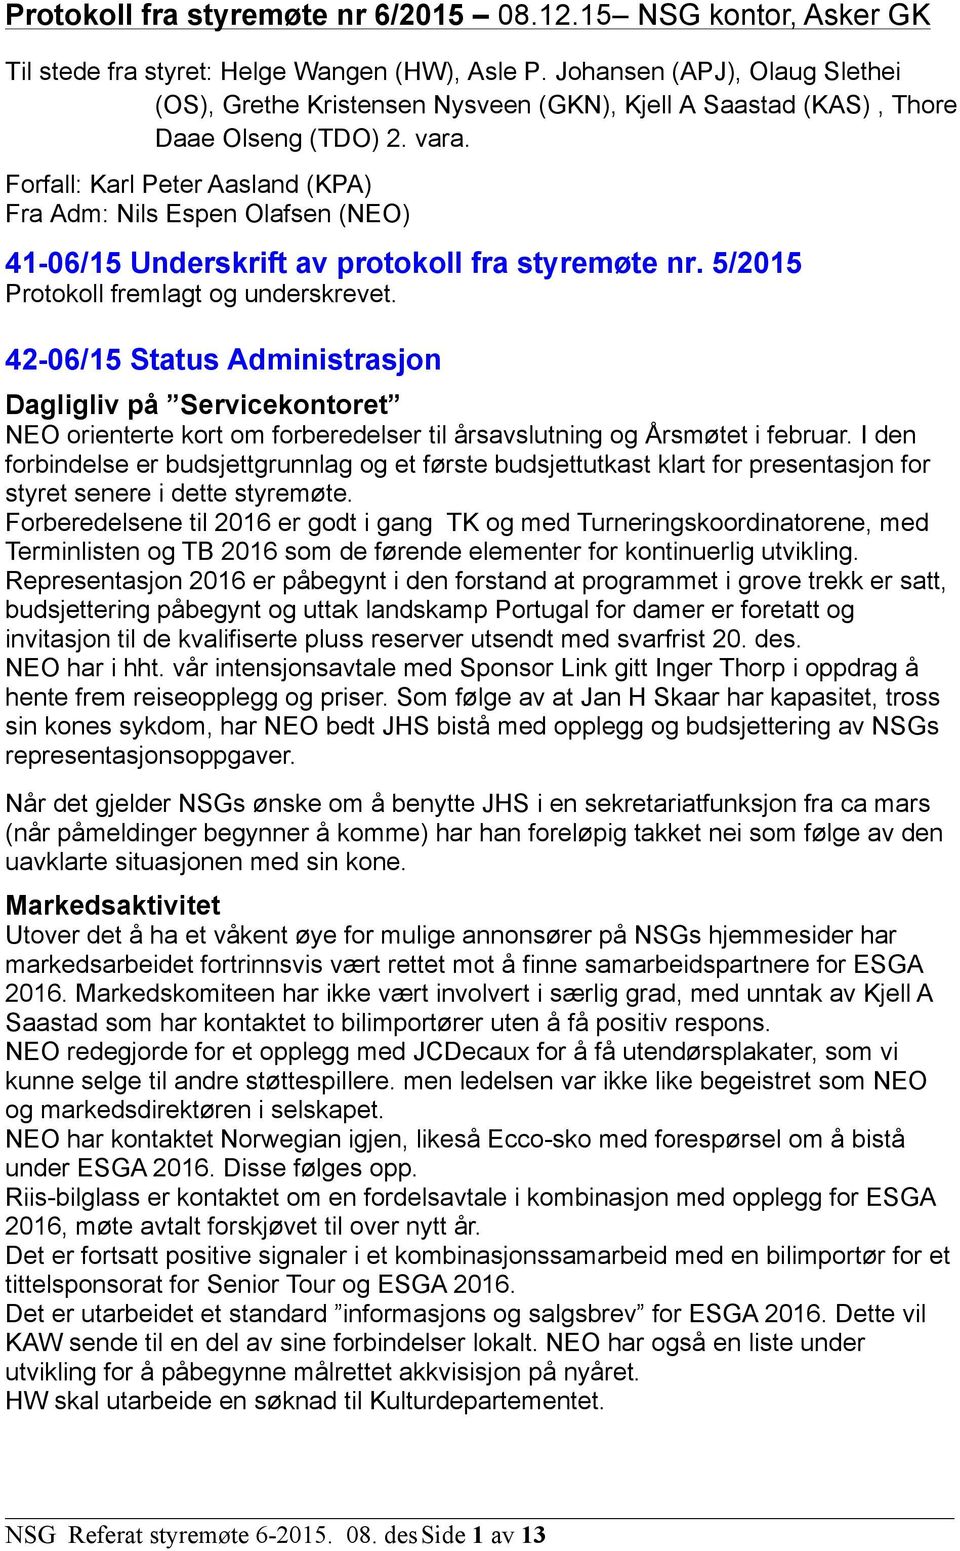 Forfall: Karl Peter Aasland (KPA) Fra Adm: Nils Espen Olafsen (NEO) 41-06/15 Underskrift av protokoll fra styremøte nr. 5/2015 Protokoll fremlagt og underskrevet.